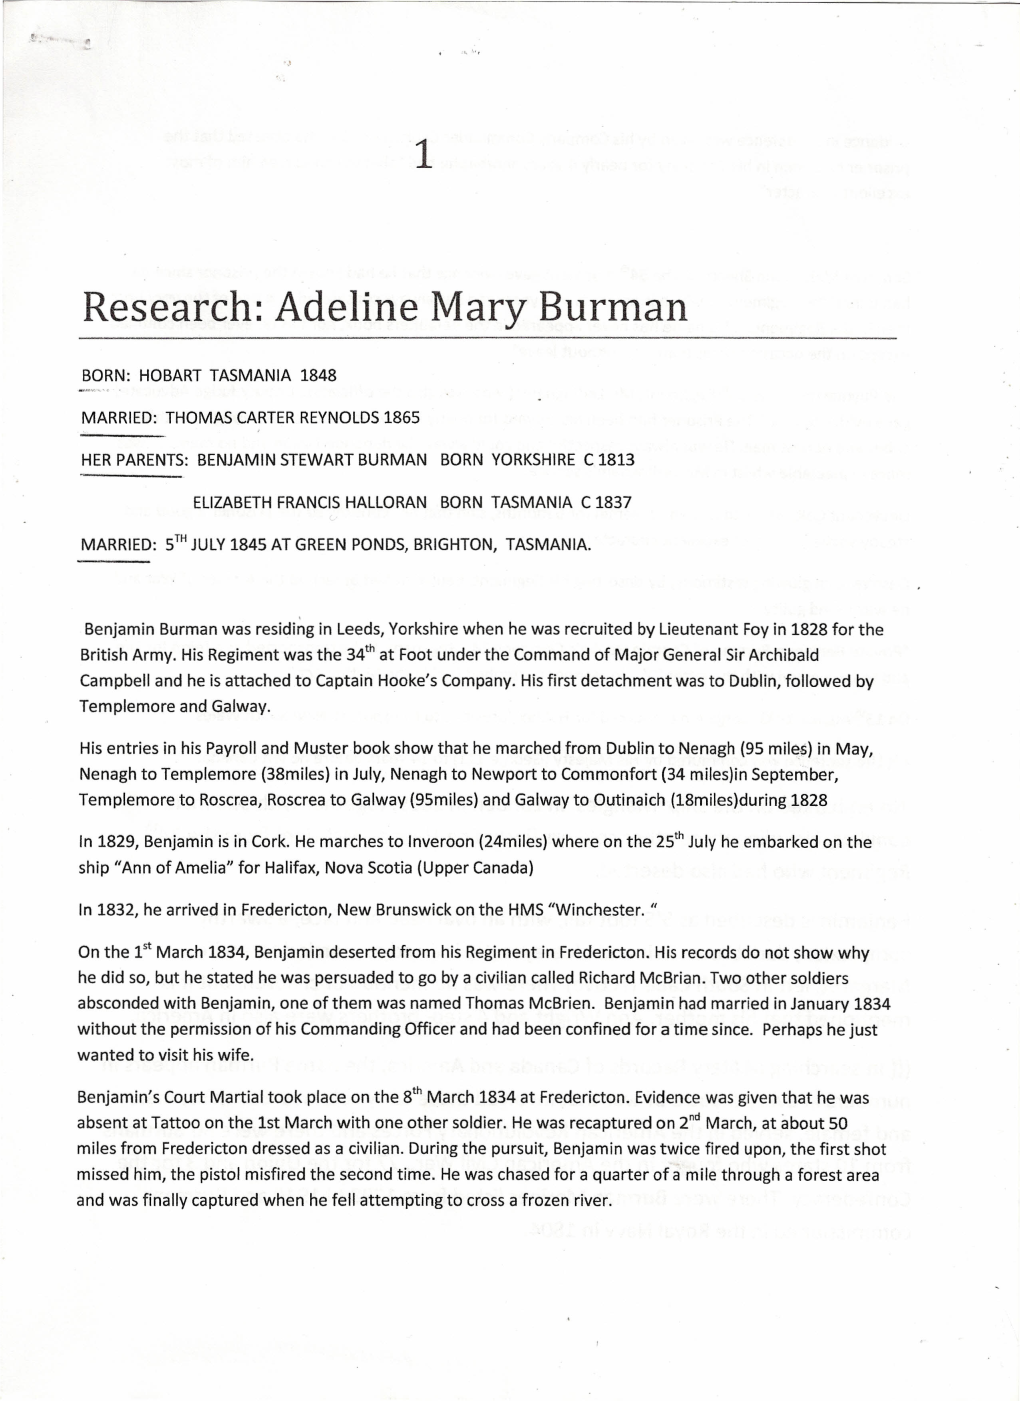 Adeline Mary Burman